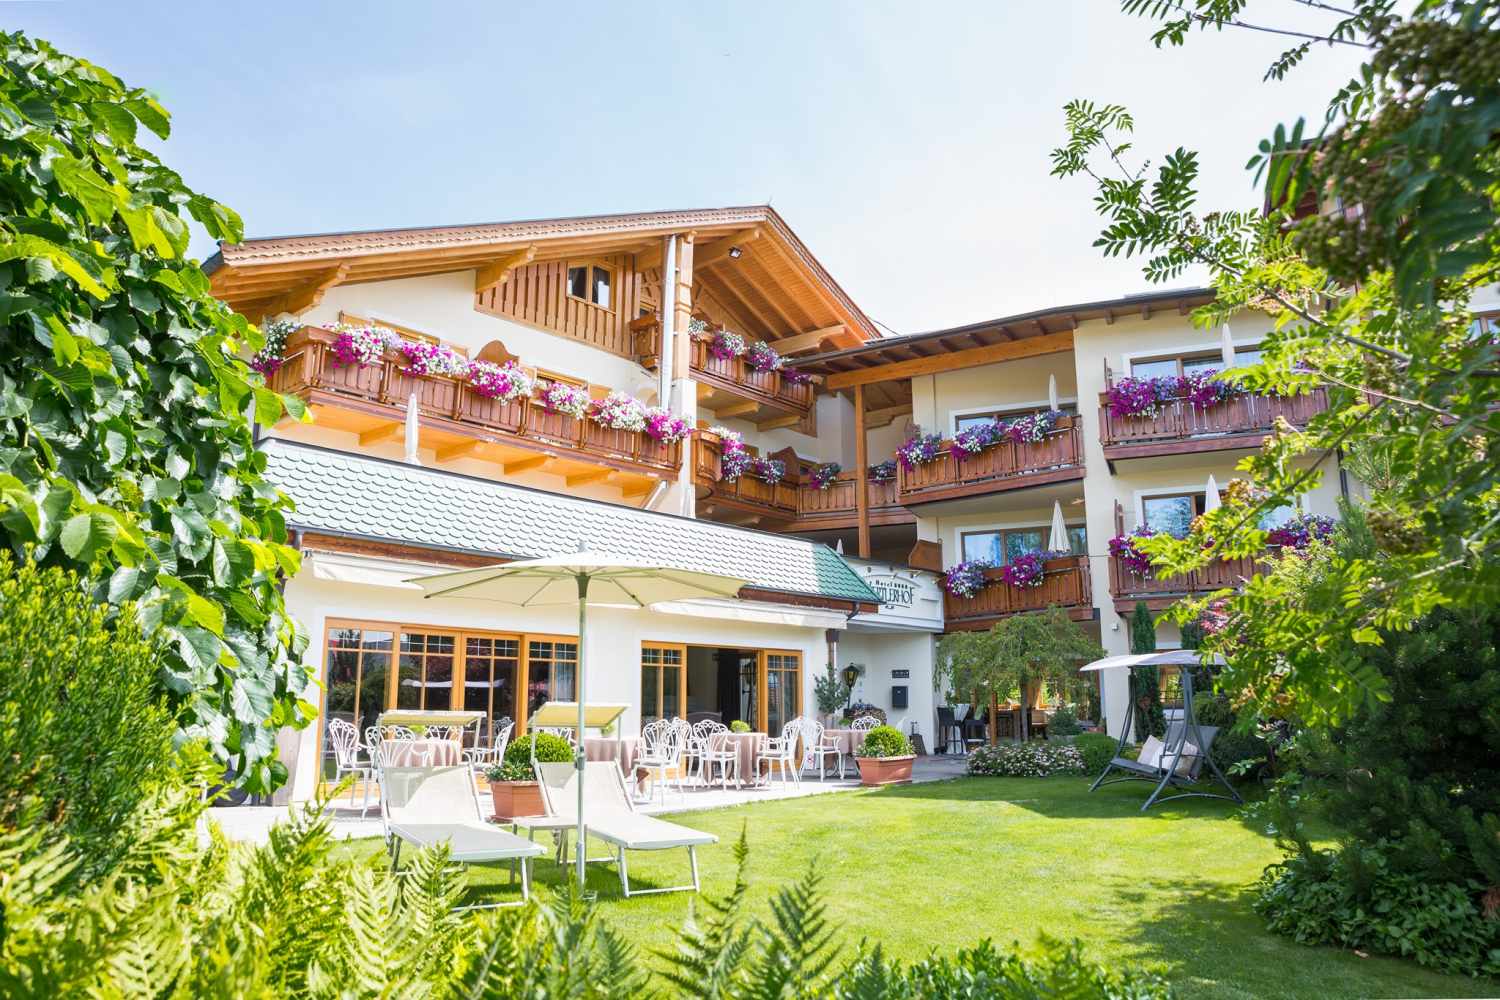 Klein-Fein Hotel Viertlerhof Avelengo, South Tyrol - Italy